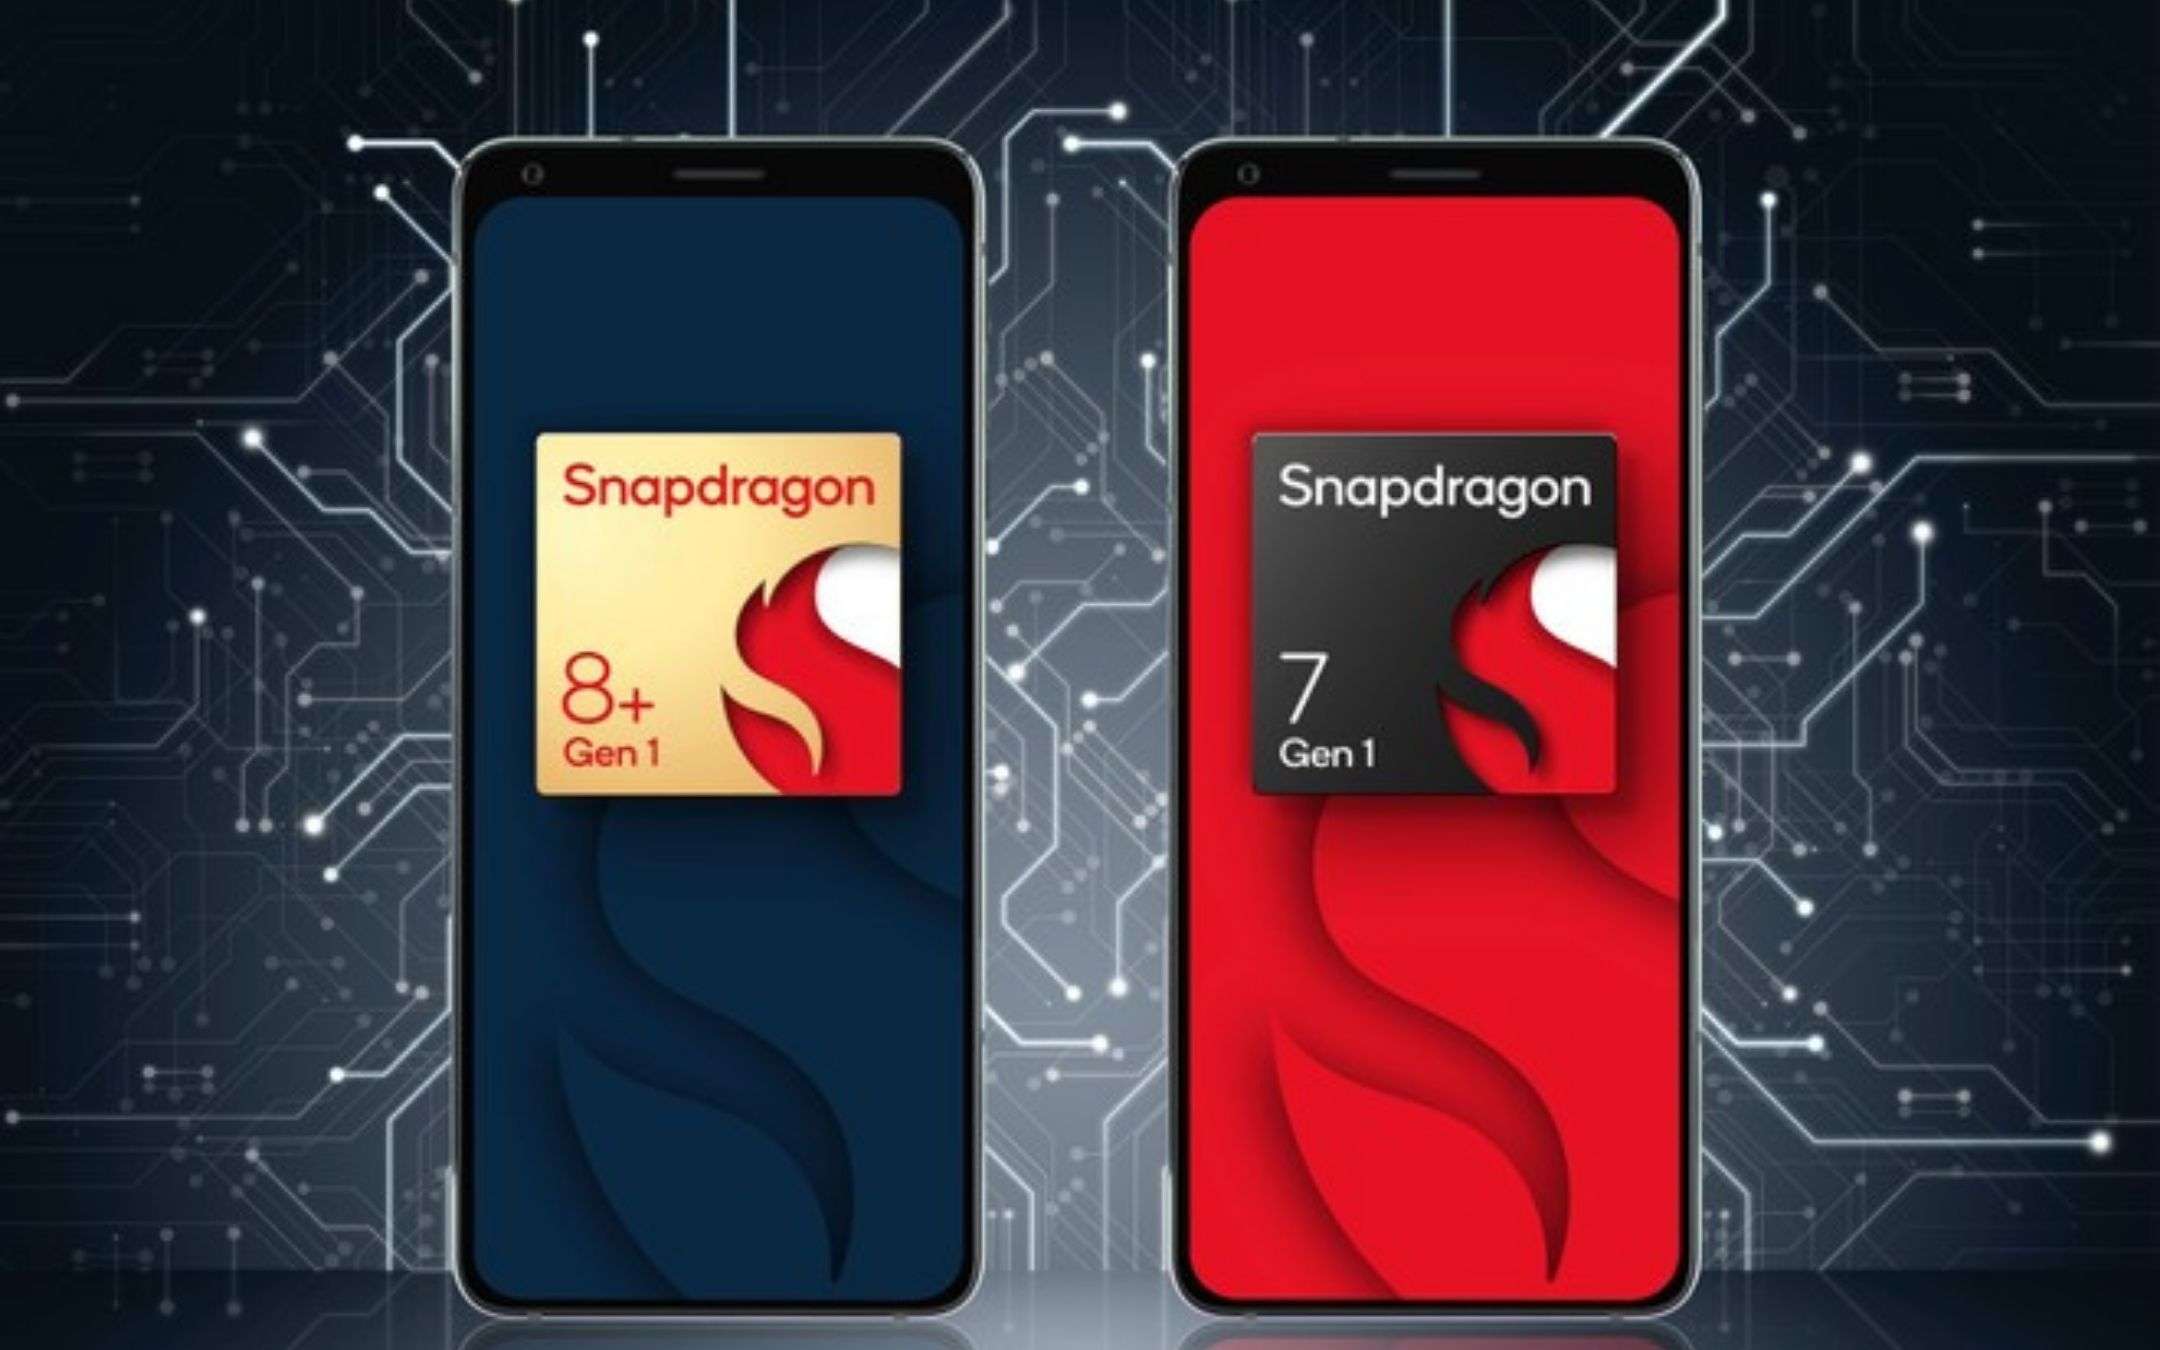 Qualcomm svela lo Snapdragon 8+ Gen 1 e lo Snapdragon 7 Gen 1